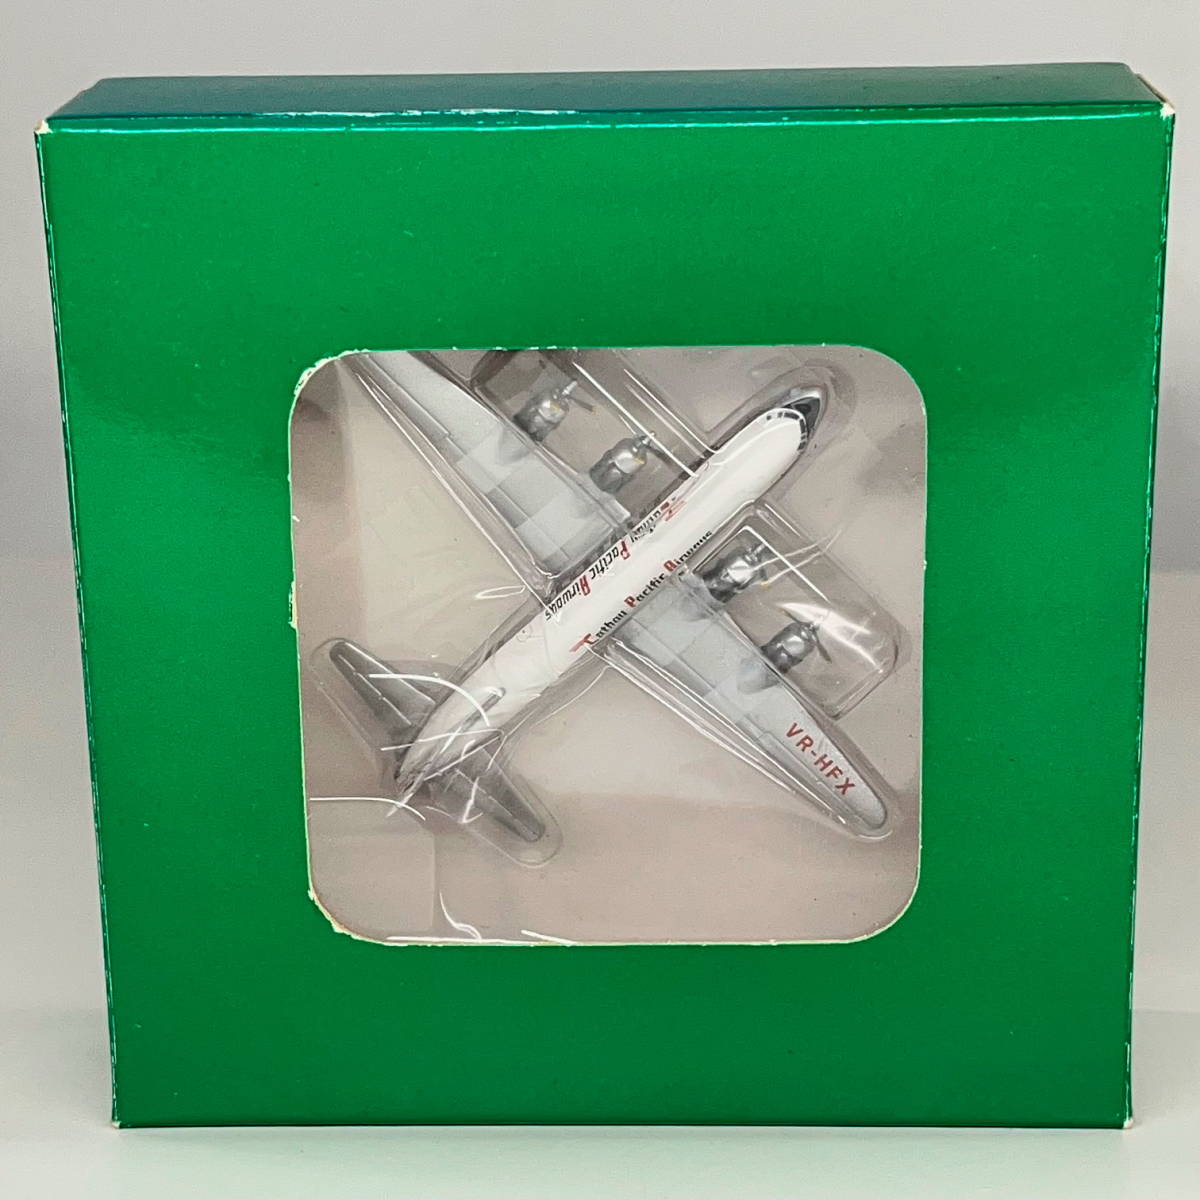 ★Aero Classics★1/400 キャセイパシフィック航空 VR-HFX 緑色無地箱★エアロクラシックス 飛行機 航空機 プロペラ _画像9